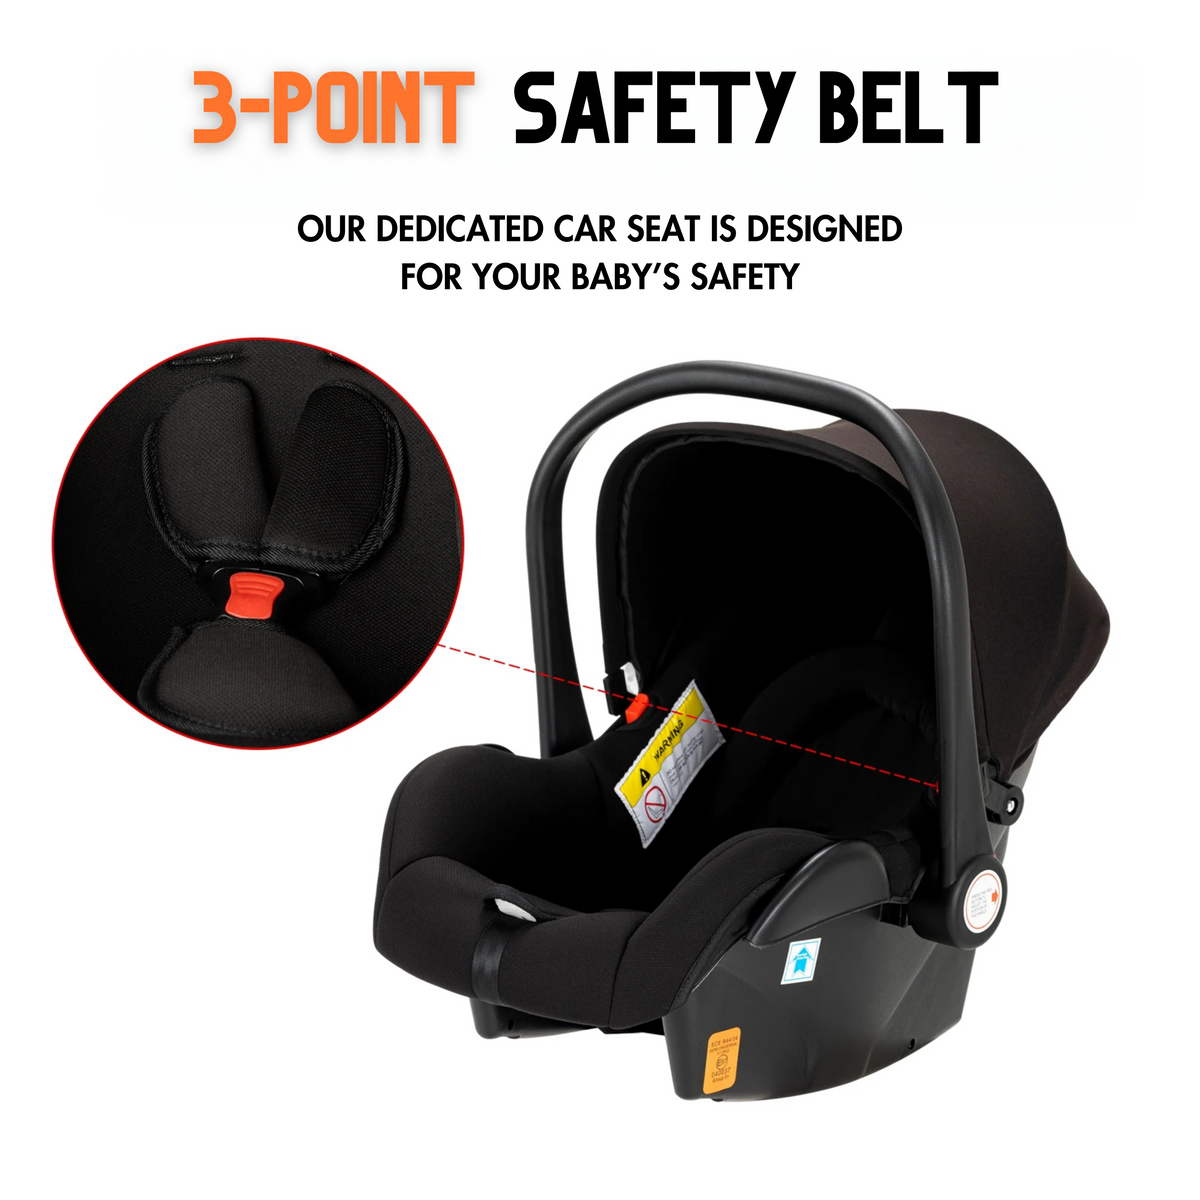 3 point safety belt